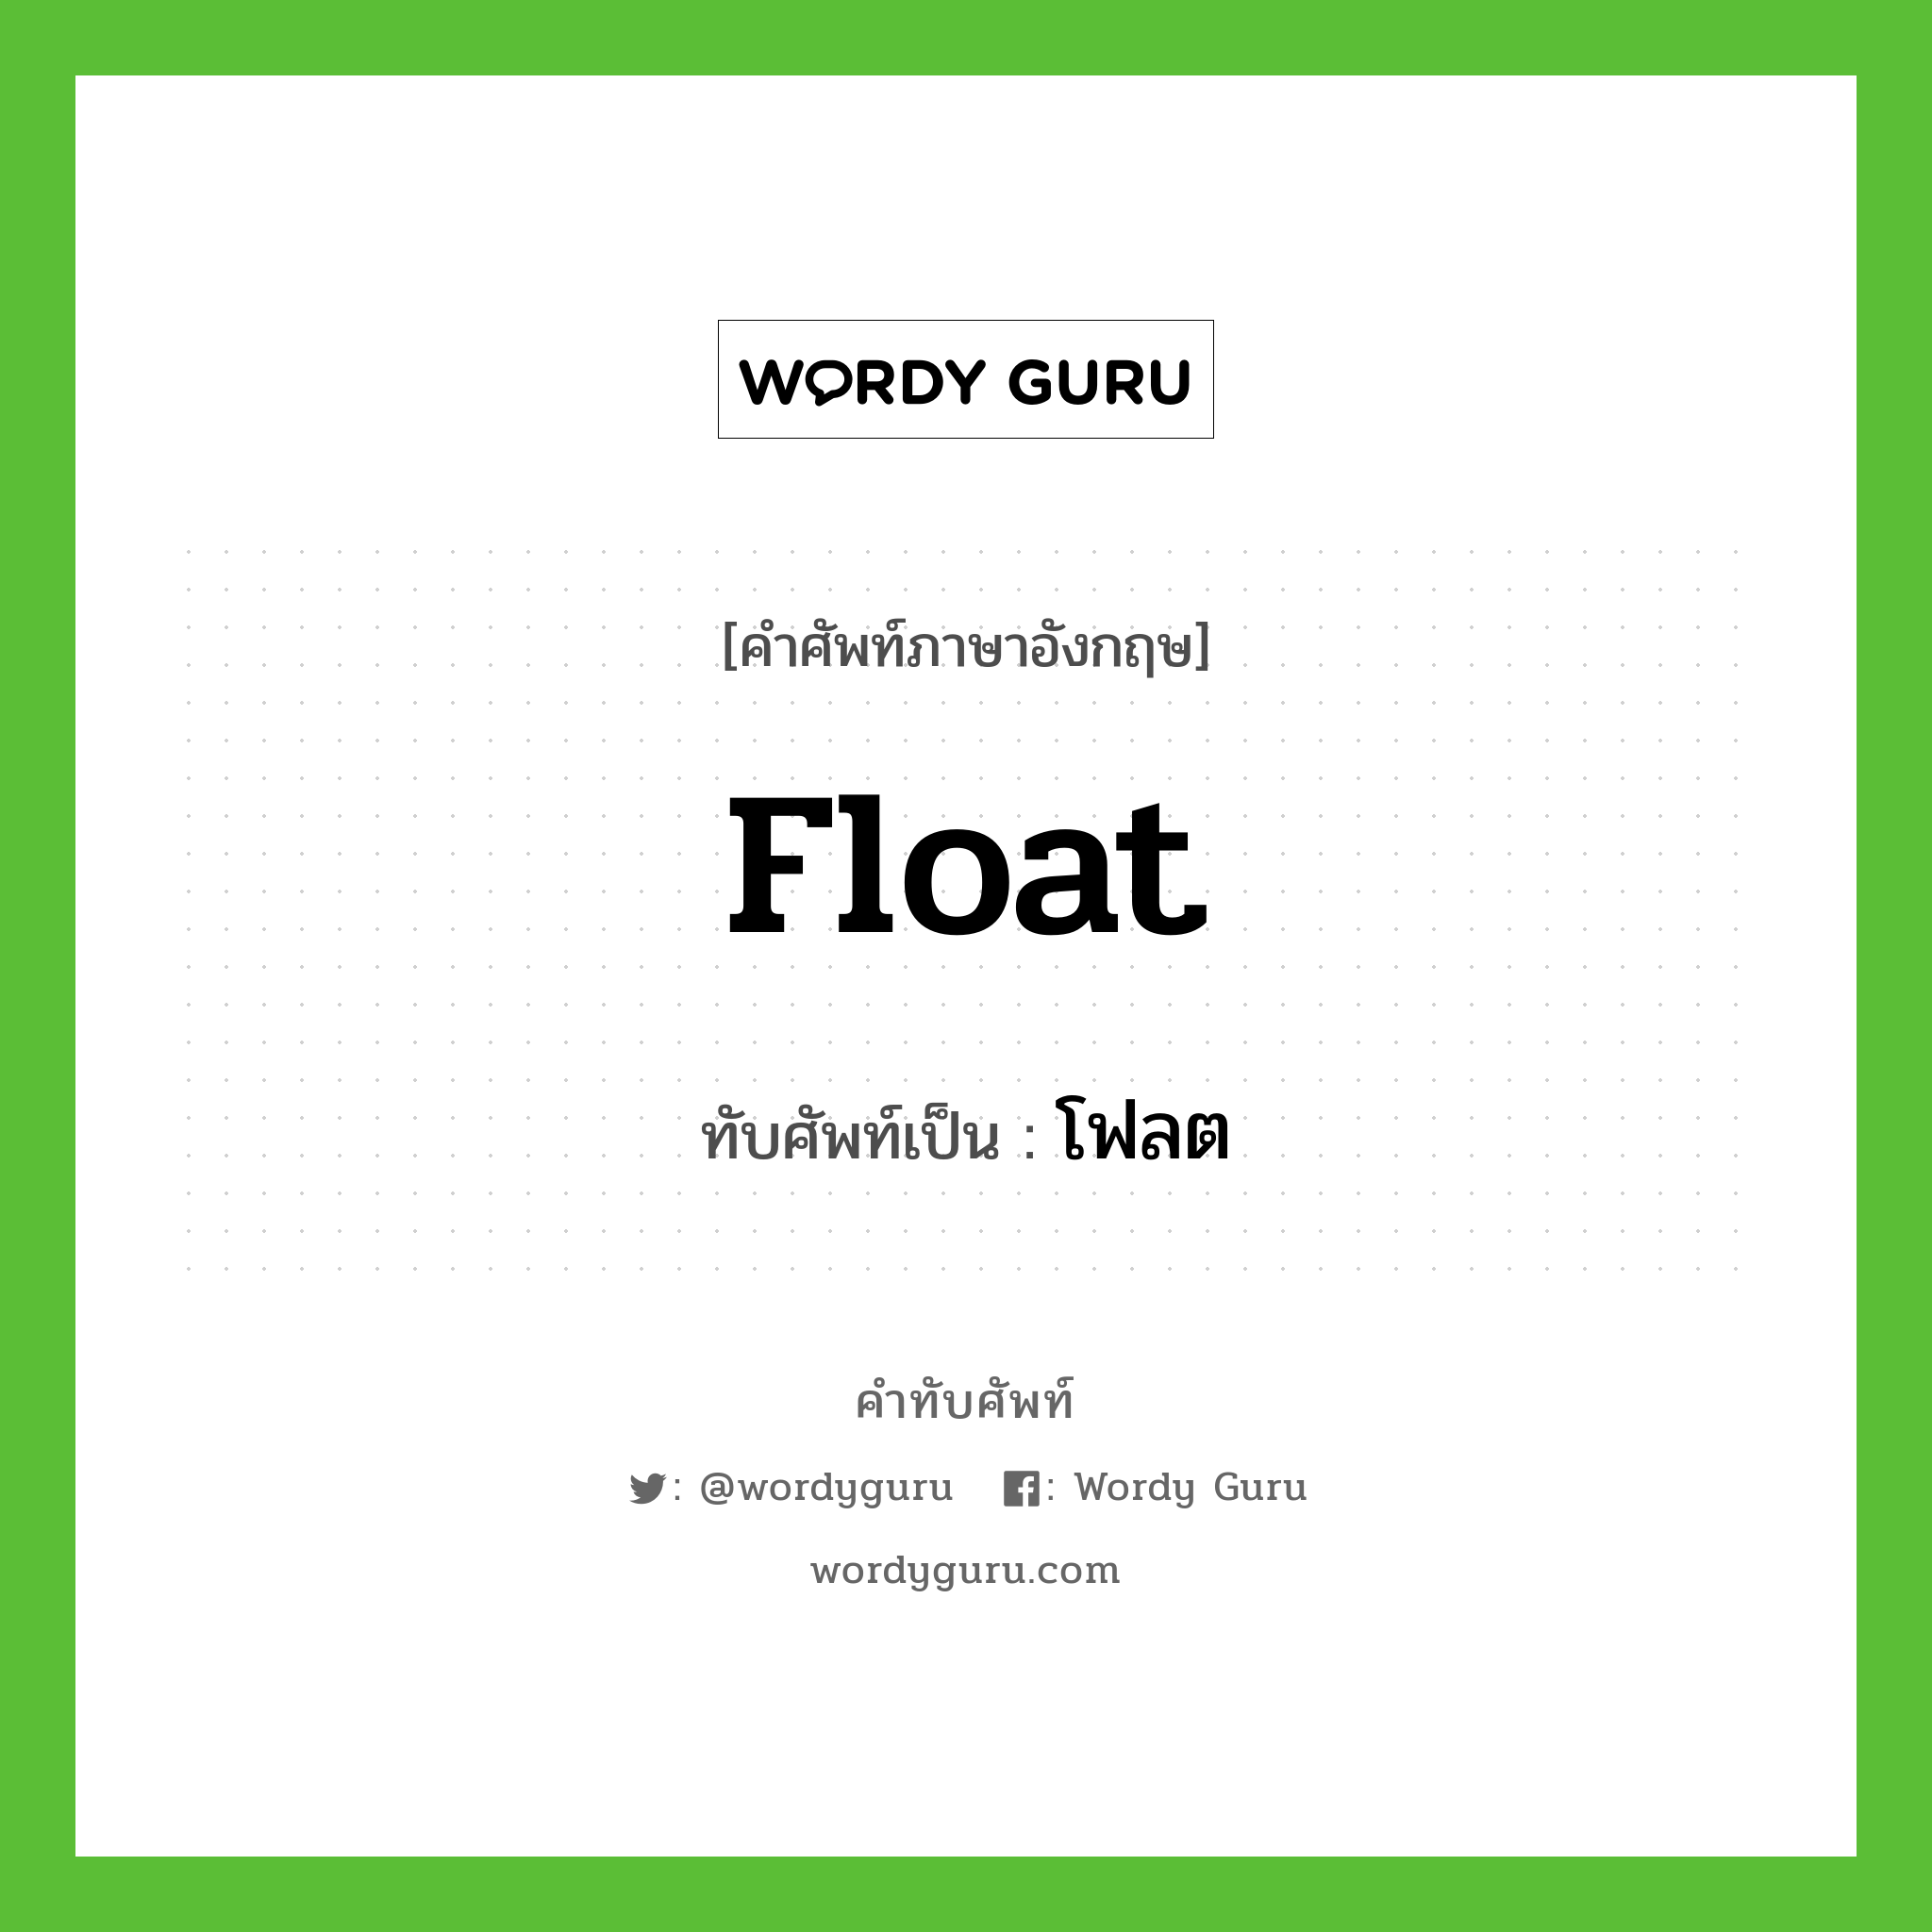 Float เขียนเป็นคำไทยว่าอะไร?, คำศัพท์ภาษาอังกฤษ Float ทับศัพท์เป็น โฟลต